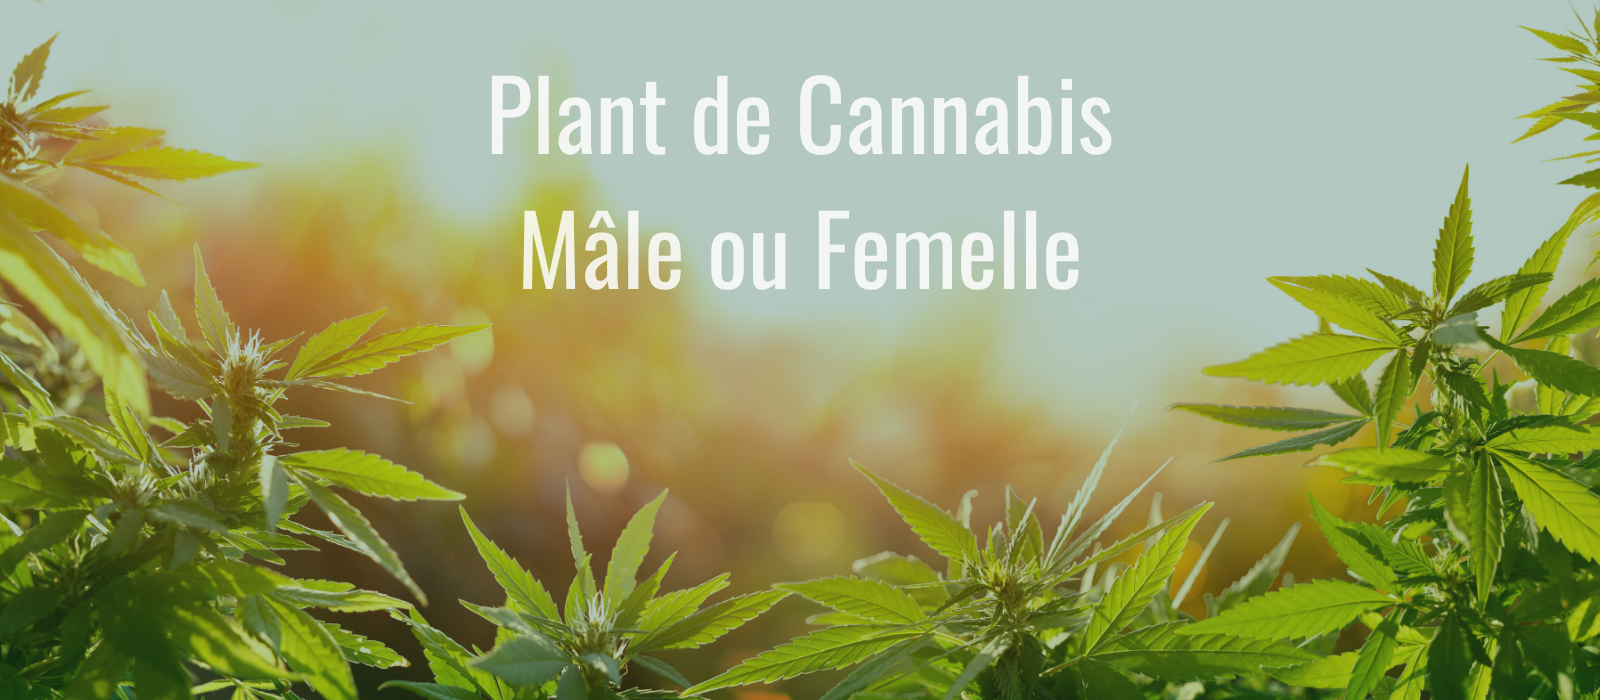 Plant de Cannabis Mâle ou Femelle